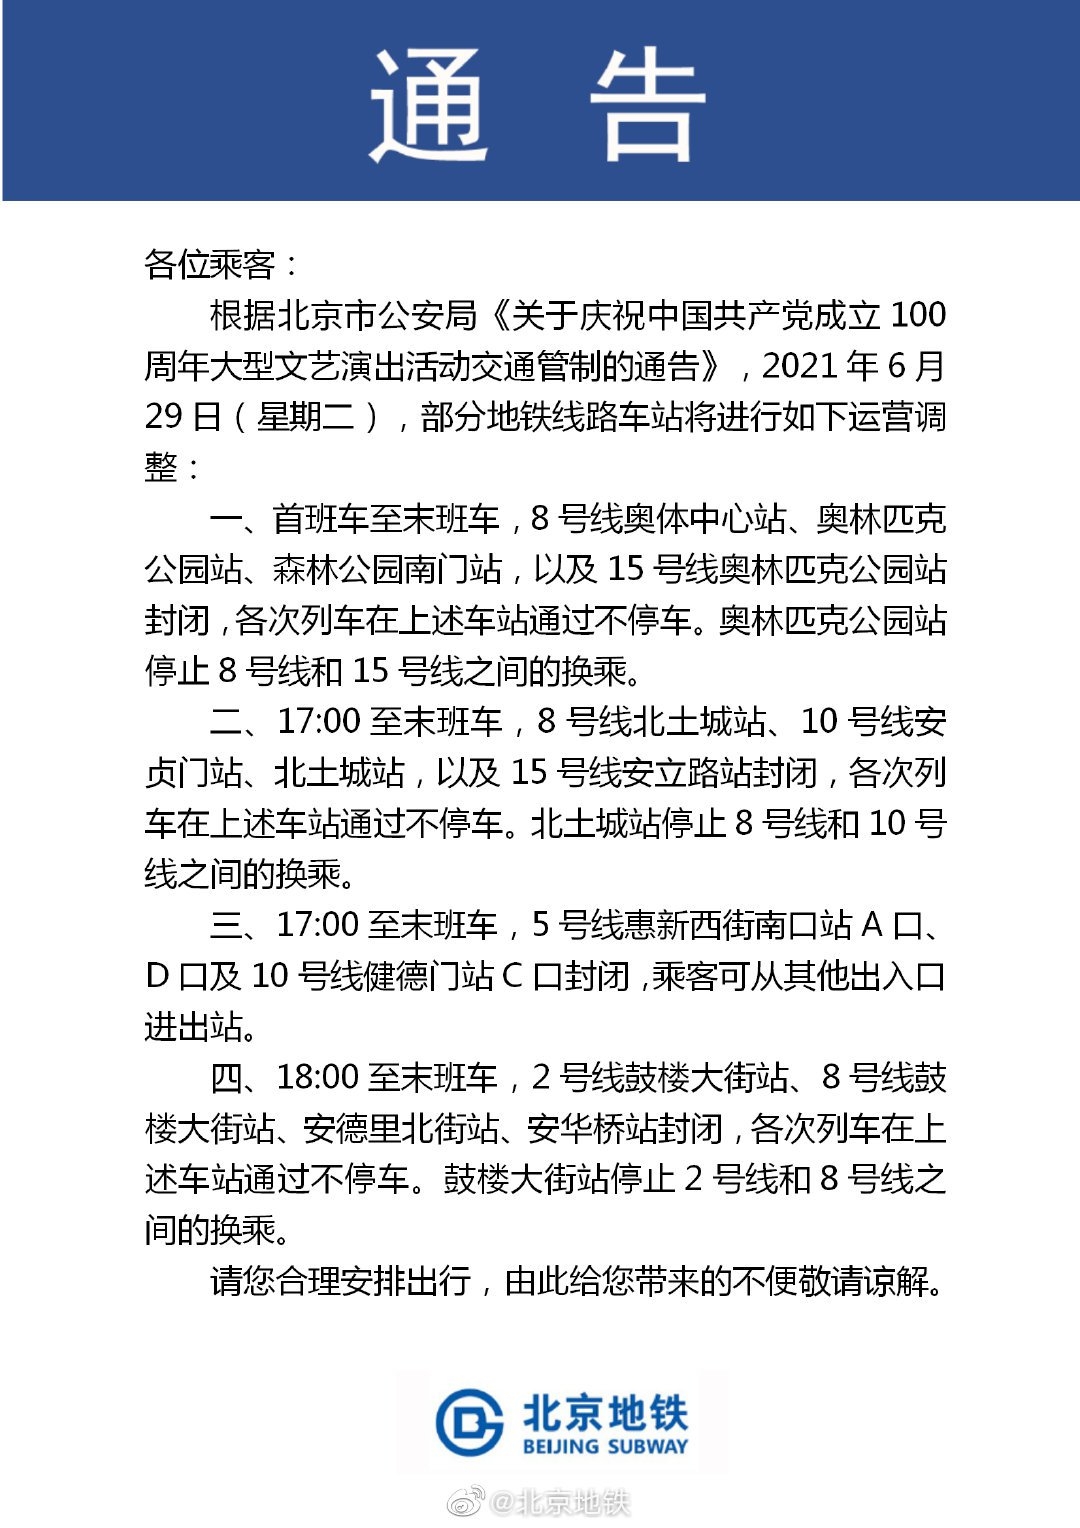 2021年6月29日北京地鐵封站調整公告